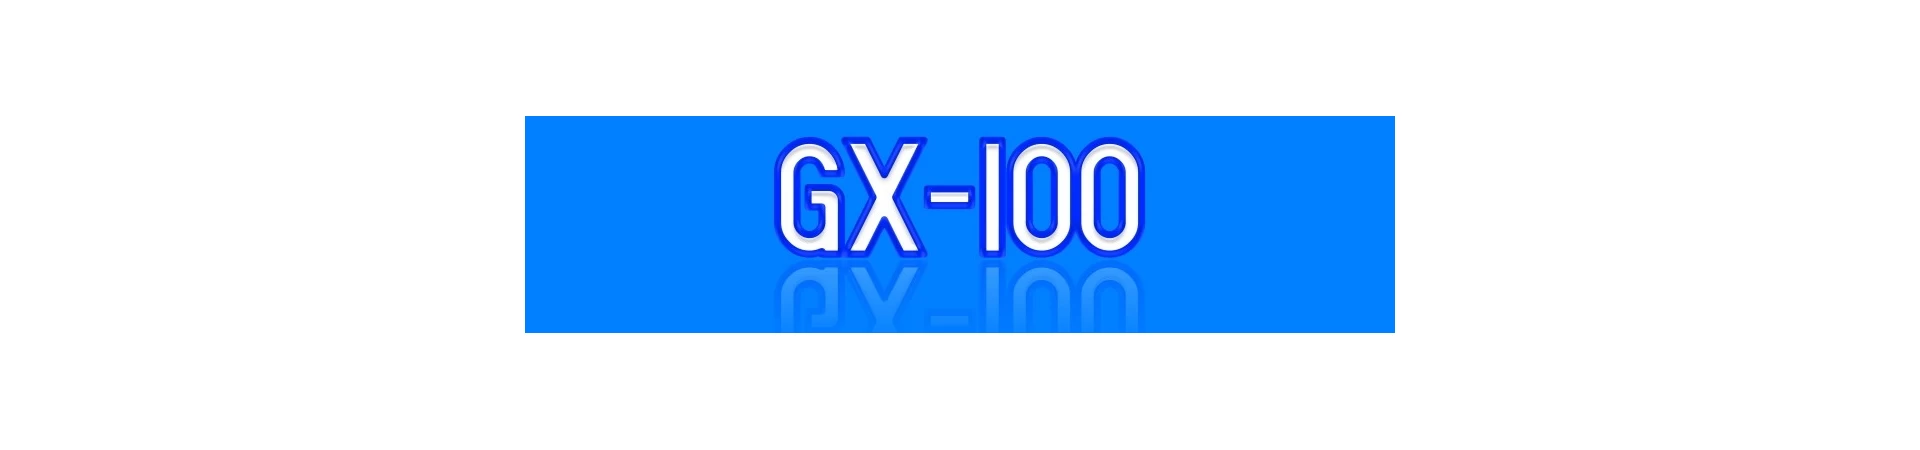 Recambios para Motor HONDA GX100 al Mejor PRECIO